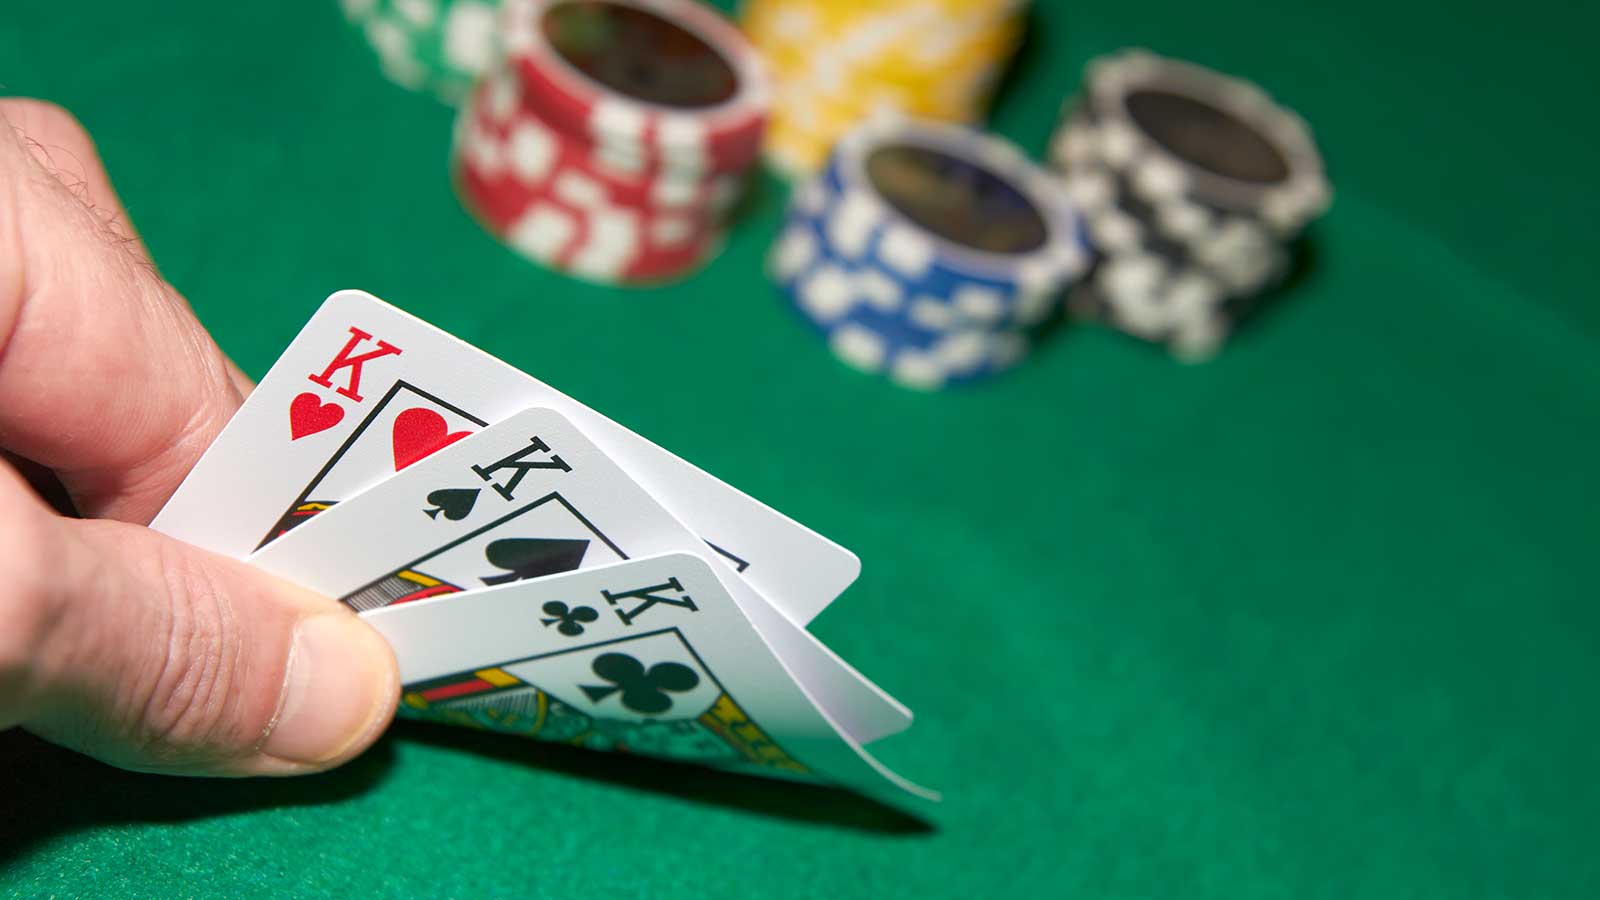 PG Slots – Smart Gambling Choice For Beginner!